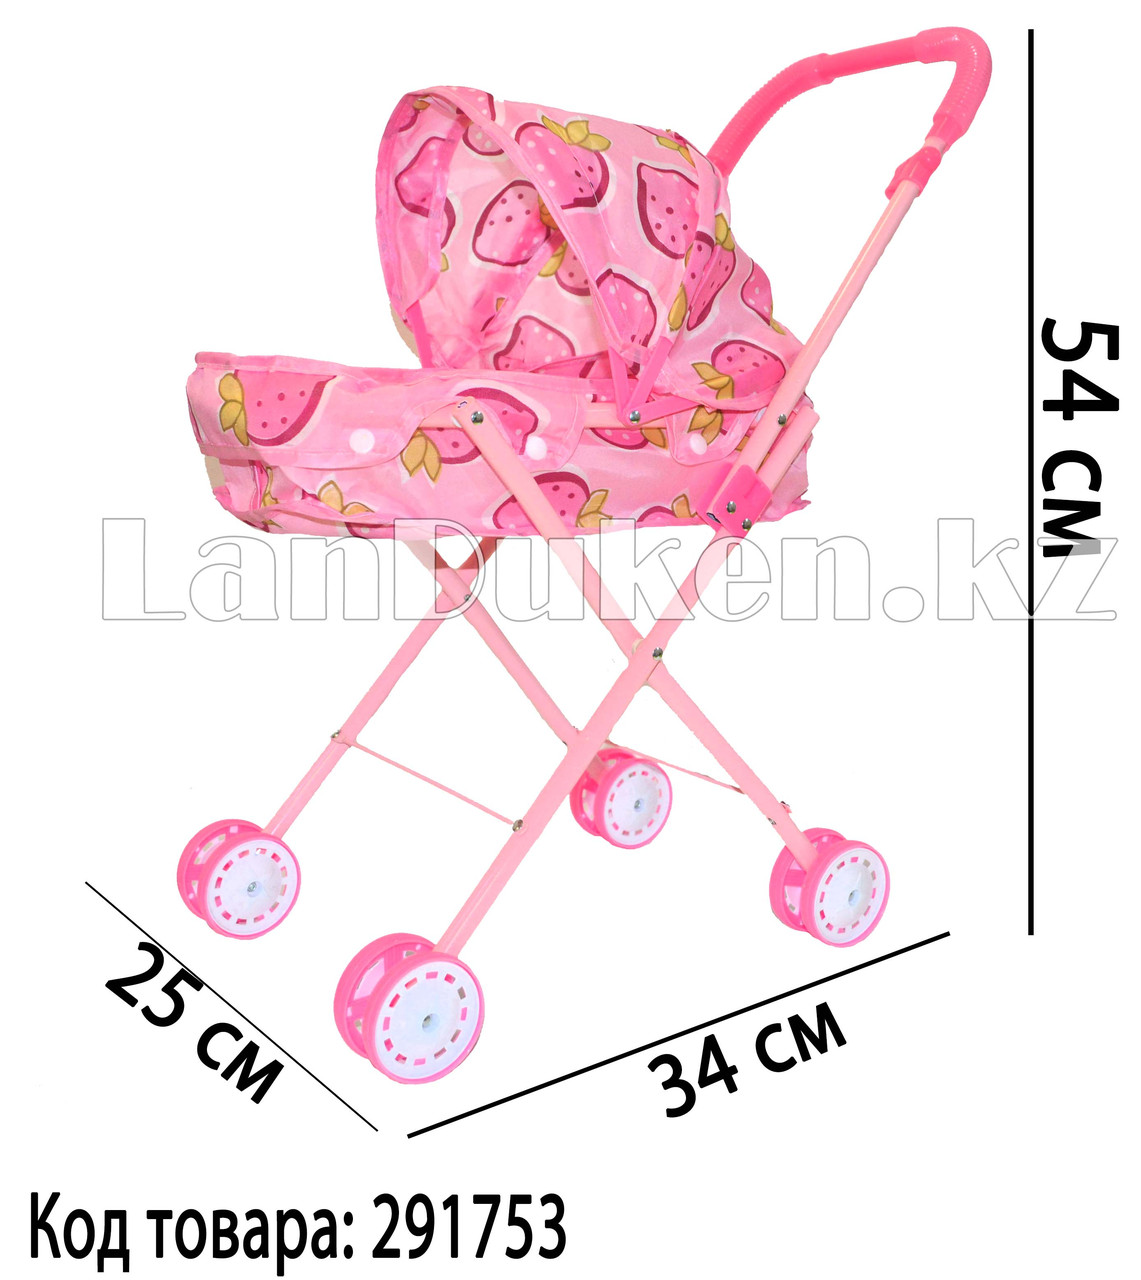 Детская складная коляска для кукол с принтом клубники h=54 см купить в  интернет-магазине LanDuken.kz